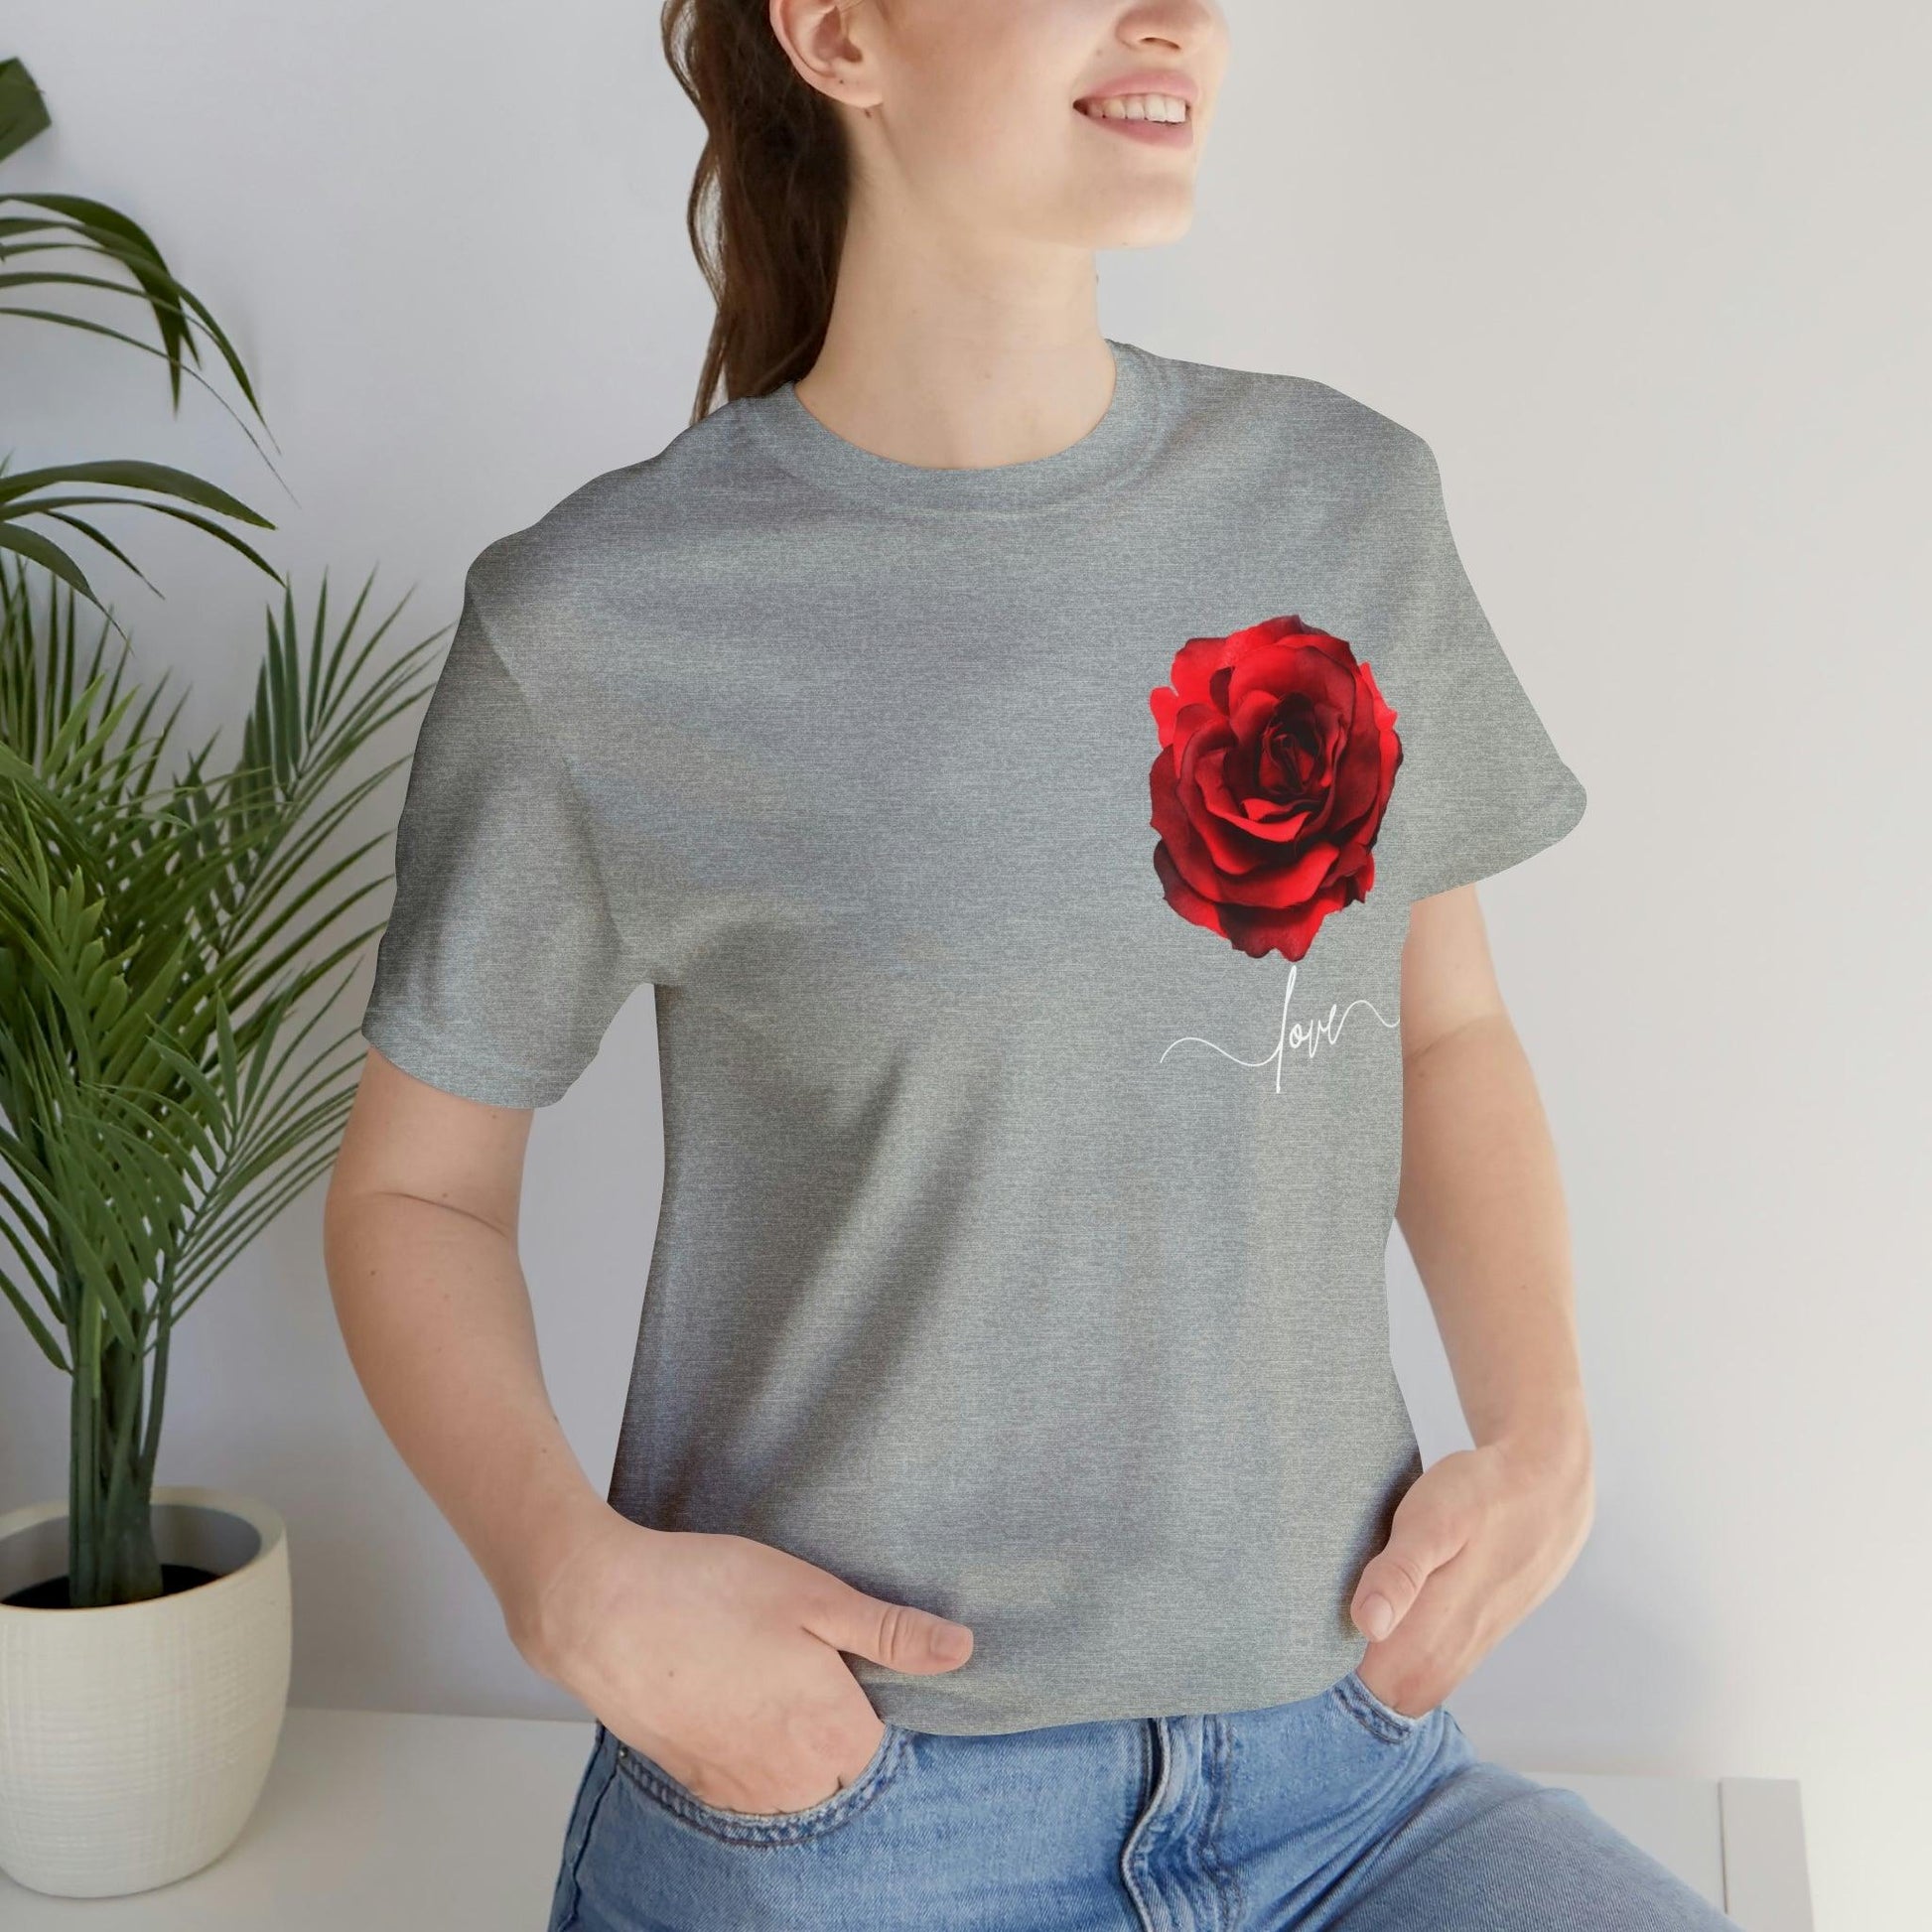 Love Rose Flower T-shirt for Women, Rose Graphic T-shirt, floral shirt, gift for her, love shirt - Giftsmojo